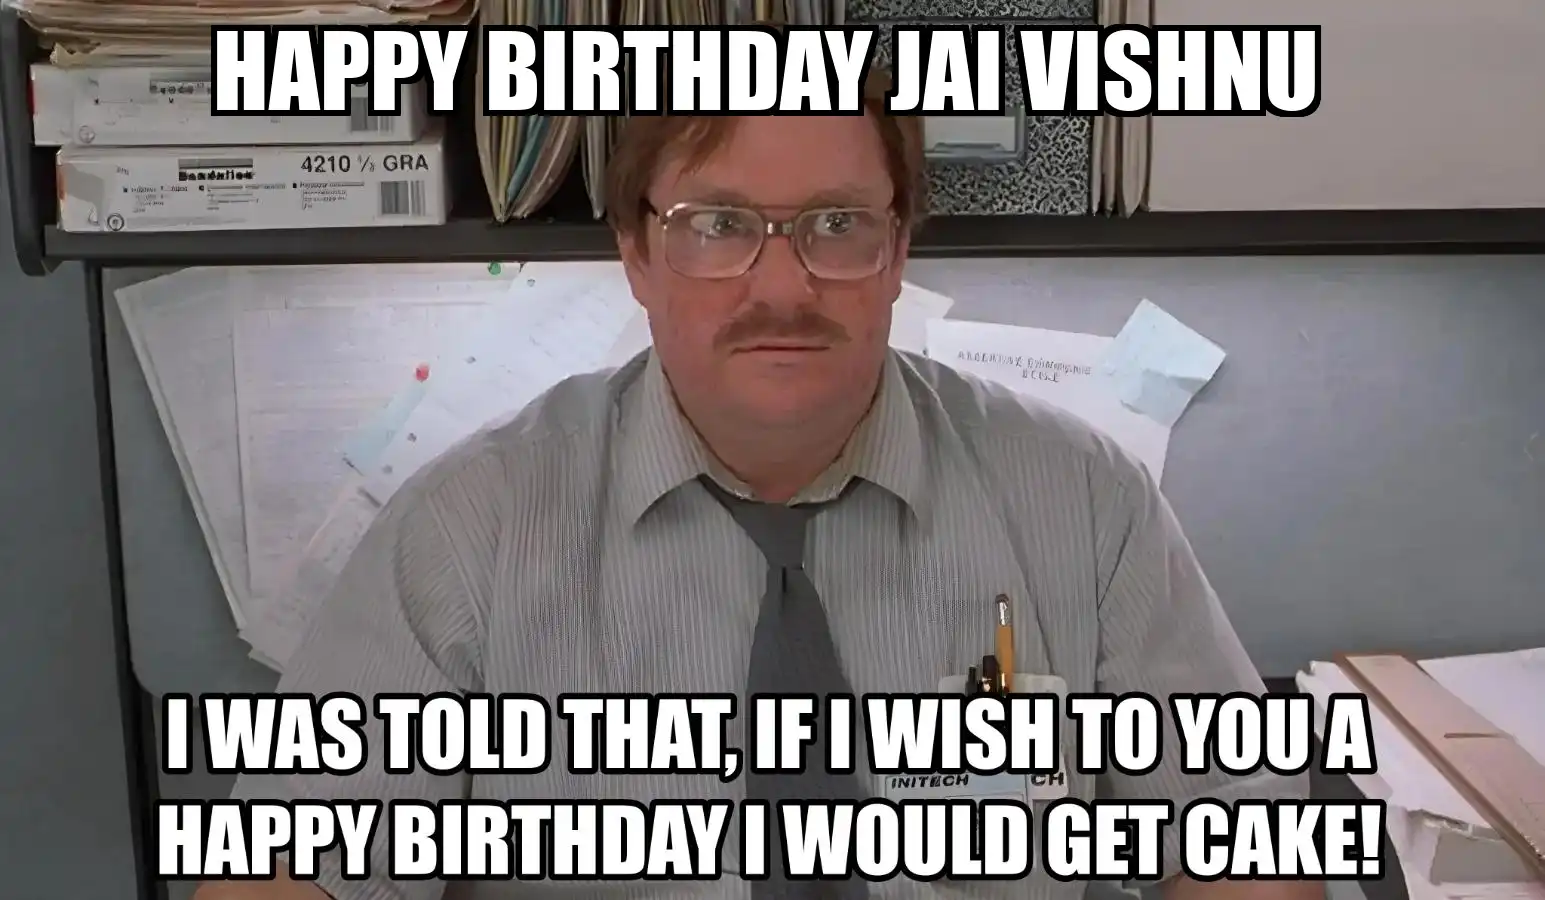 Happy Birthday Jai vishnu I Would Get A Cake Meme